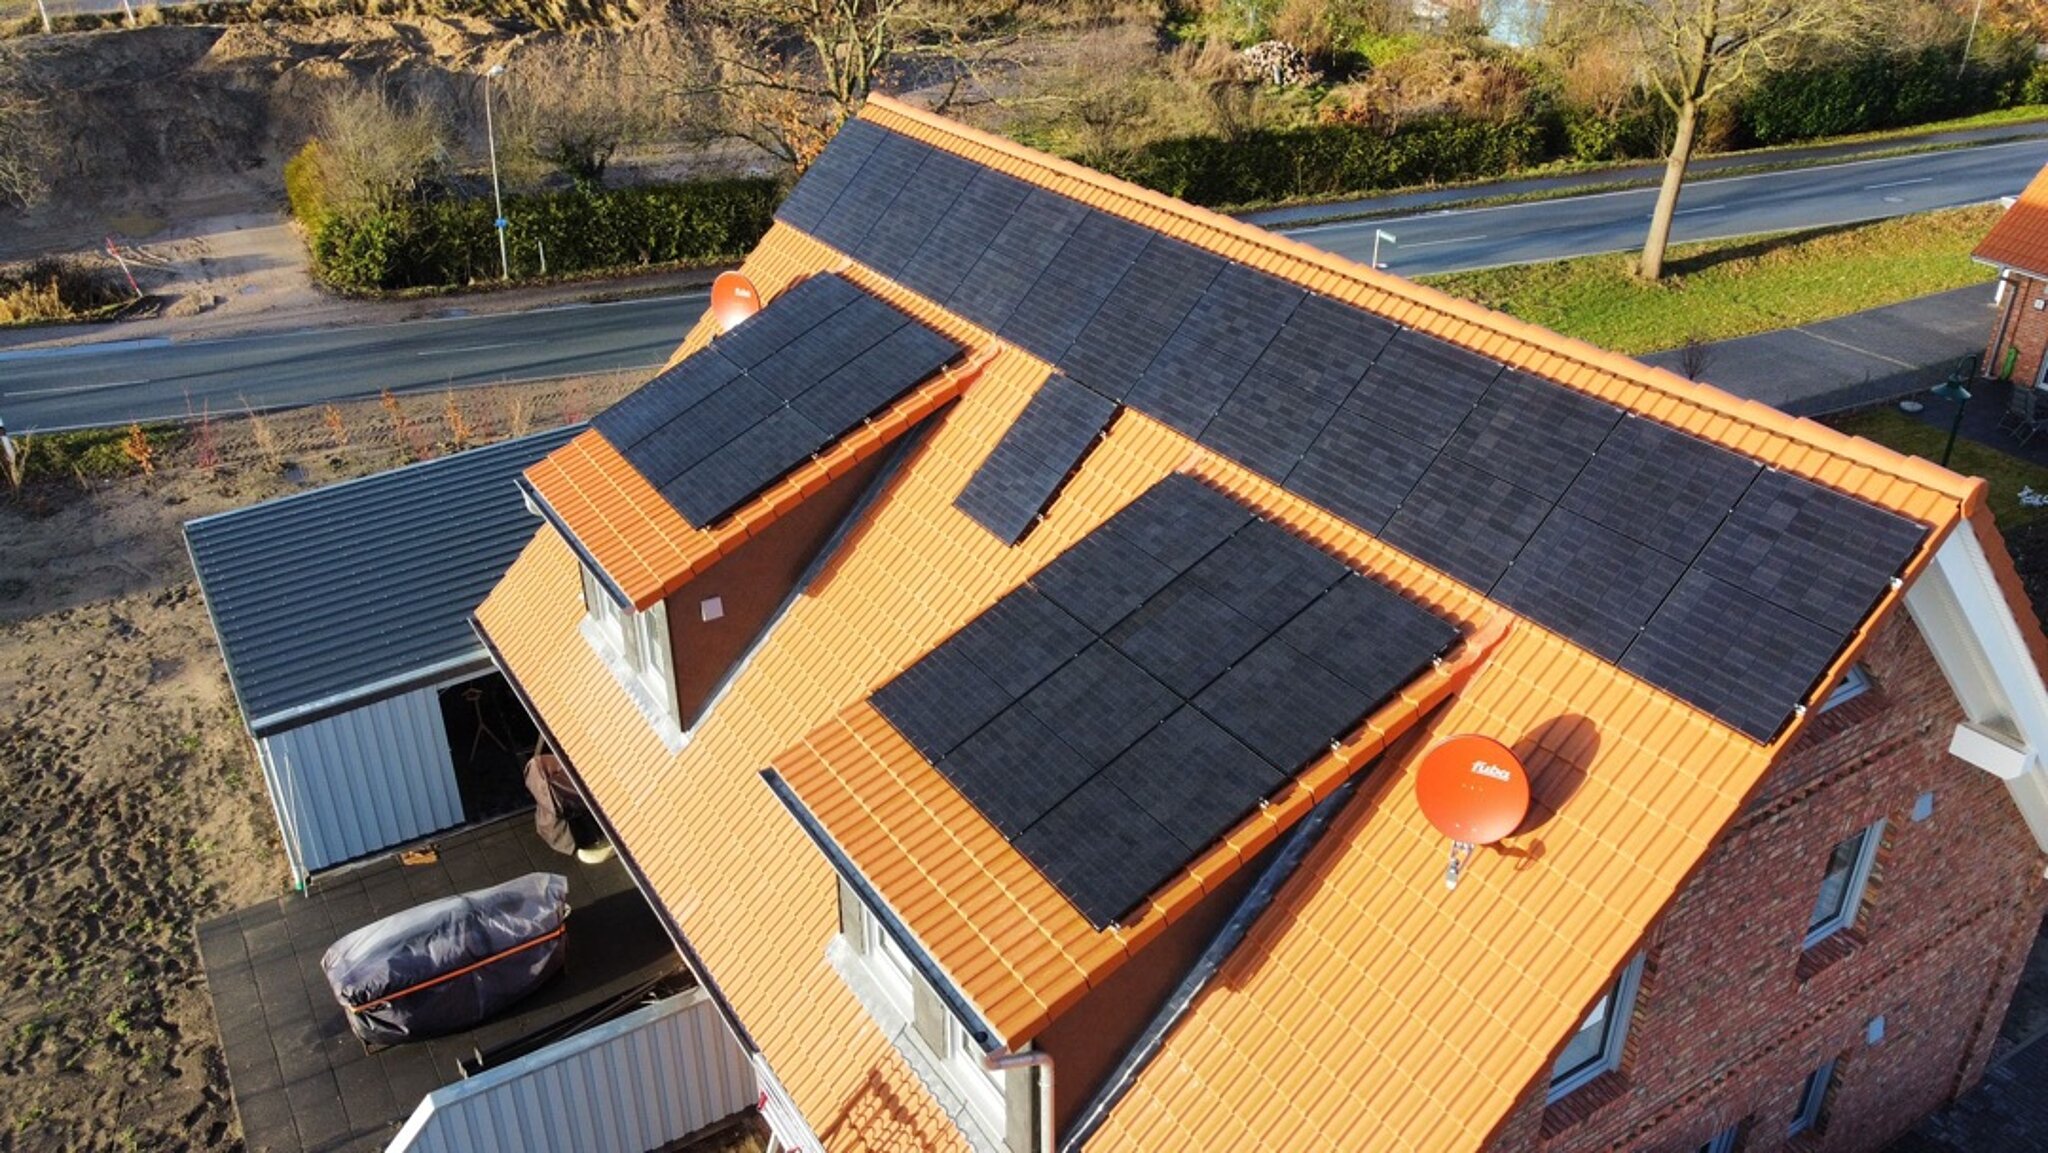 Kundenbeispiel vom Baucentrum Uelzen mit Photovoltaik Module auf dem Dach 